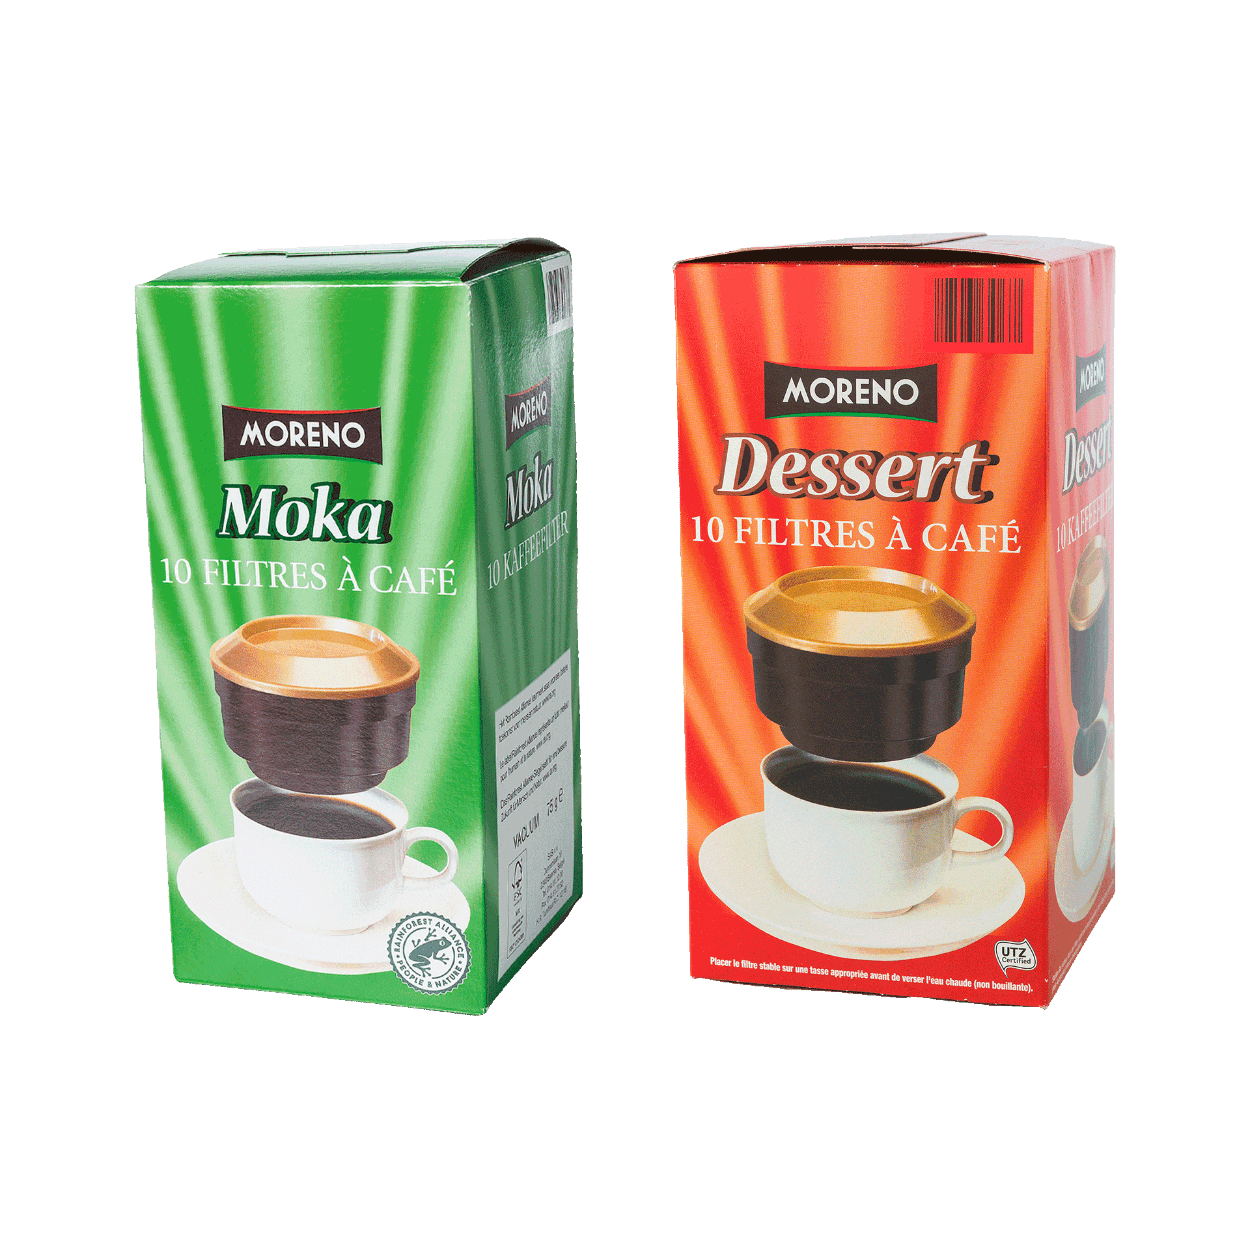 MORENO® Grains de café dessert bon marché chez ALDI